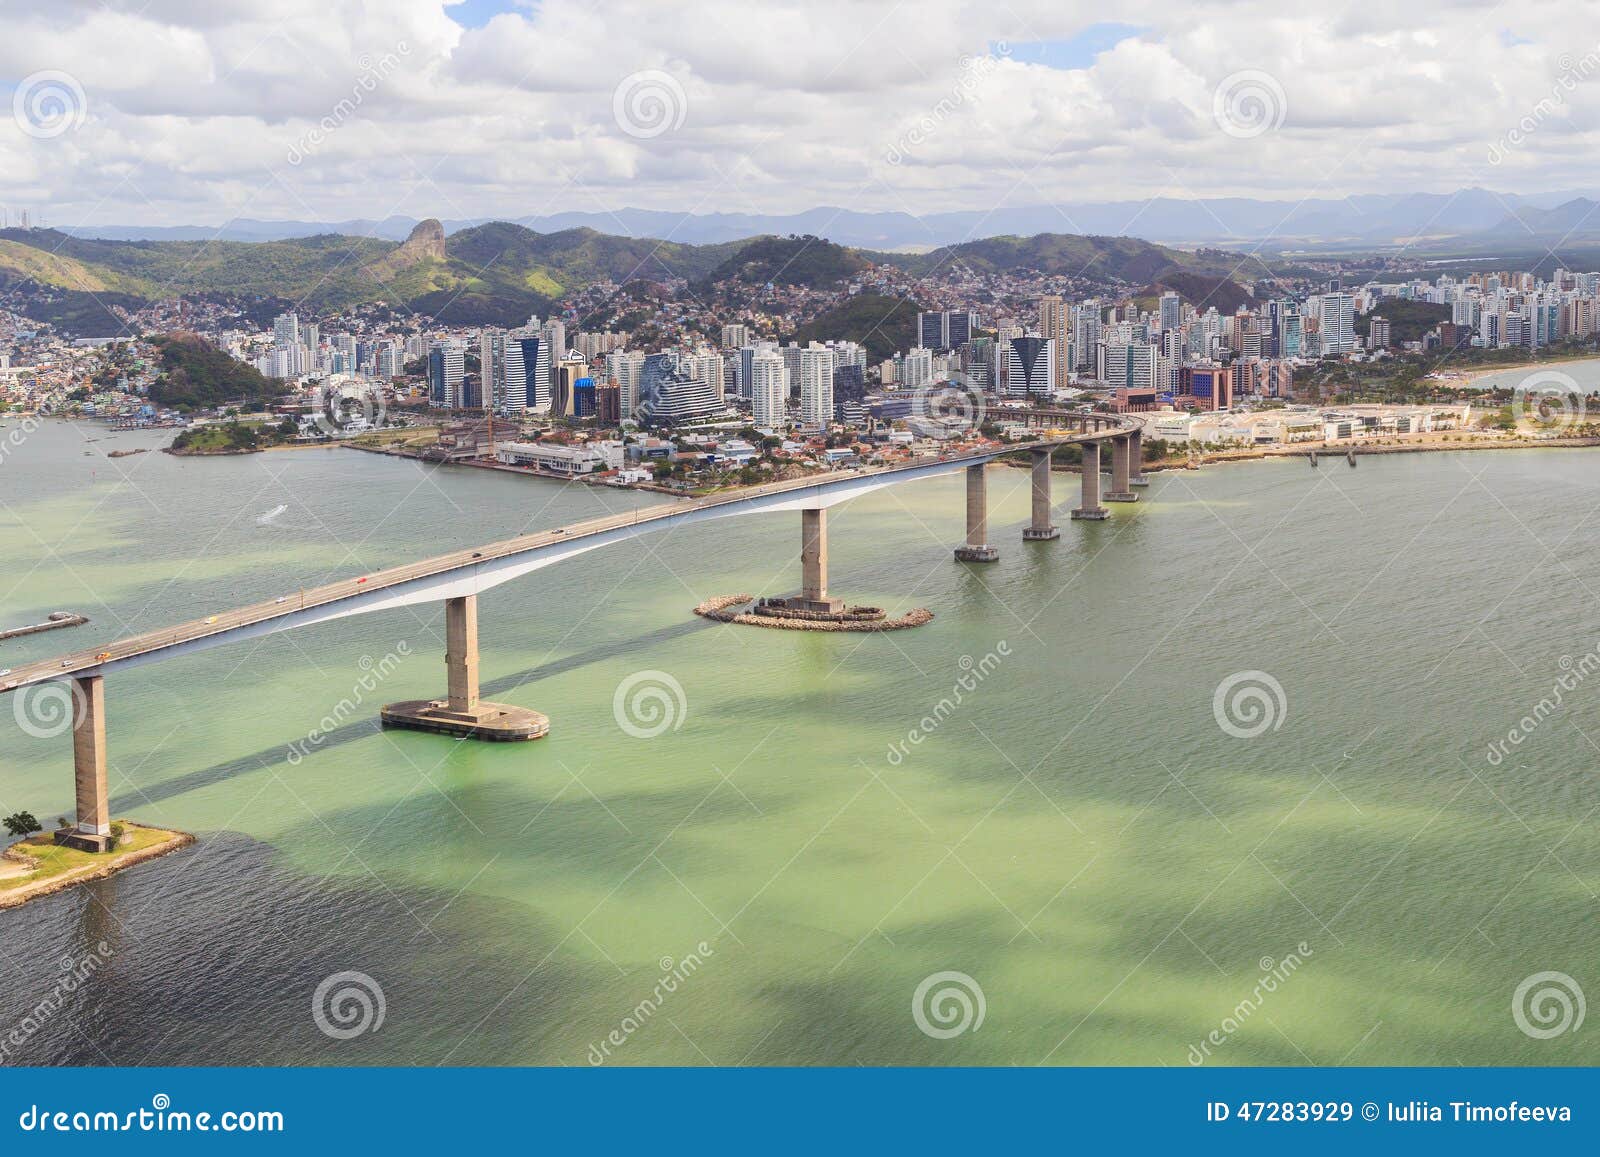 third bridge, vitoria, vila velha, brazil